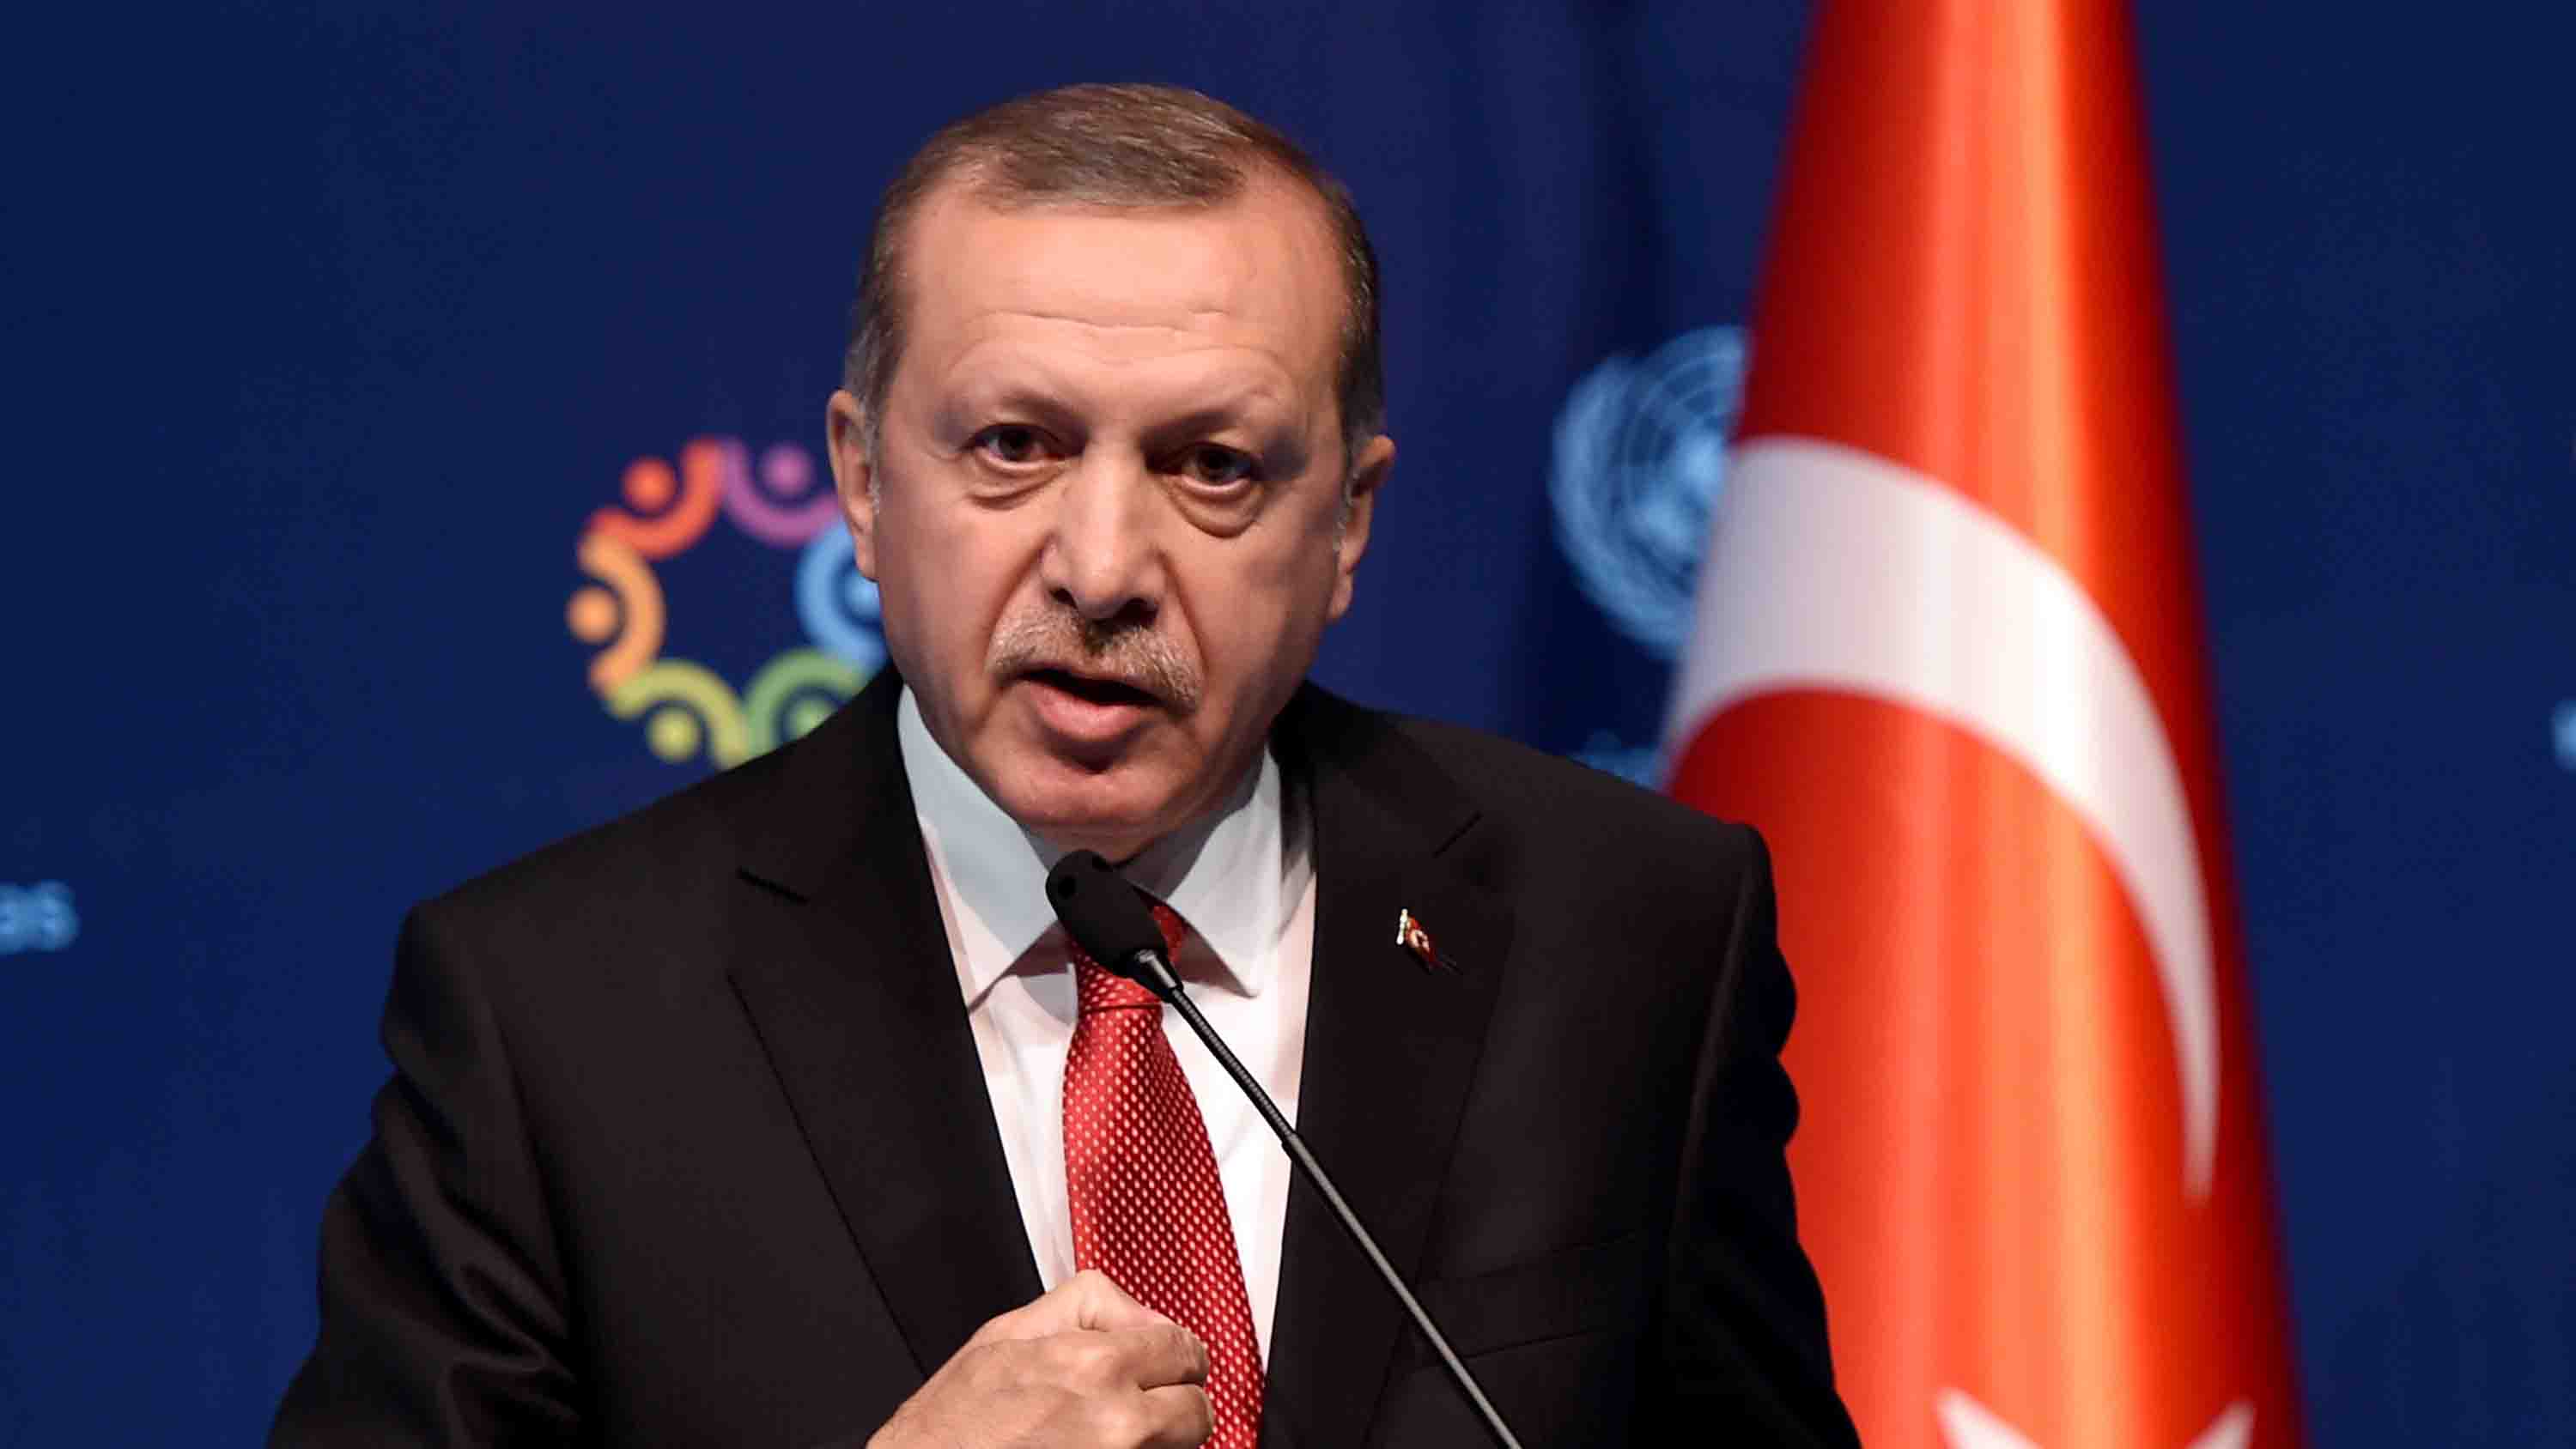 El presidente turco afirmó que su Gobierno tiene suficientes pruebas de que el asesinato del periodista crítico fue político